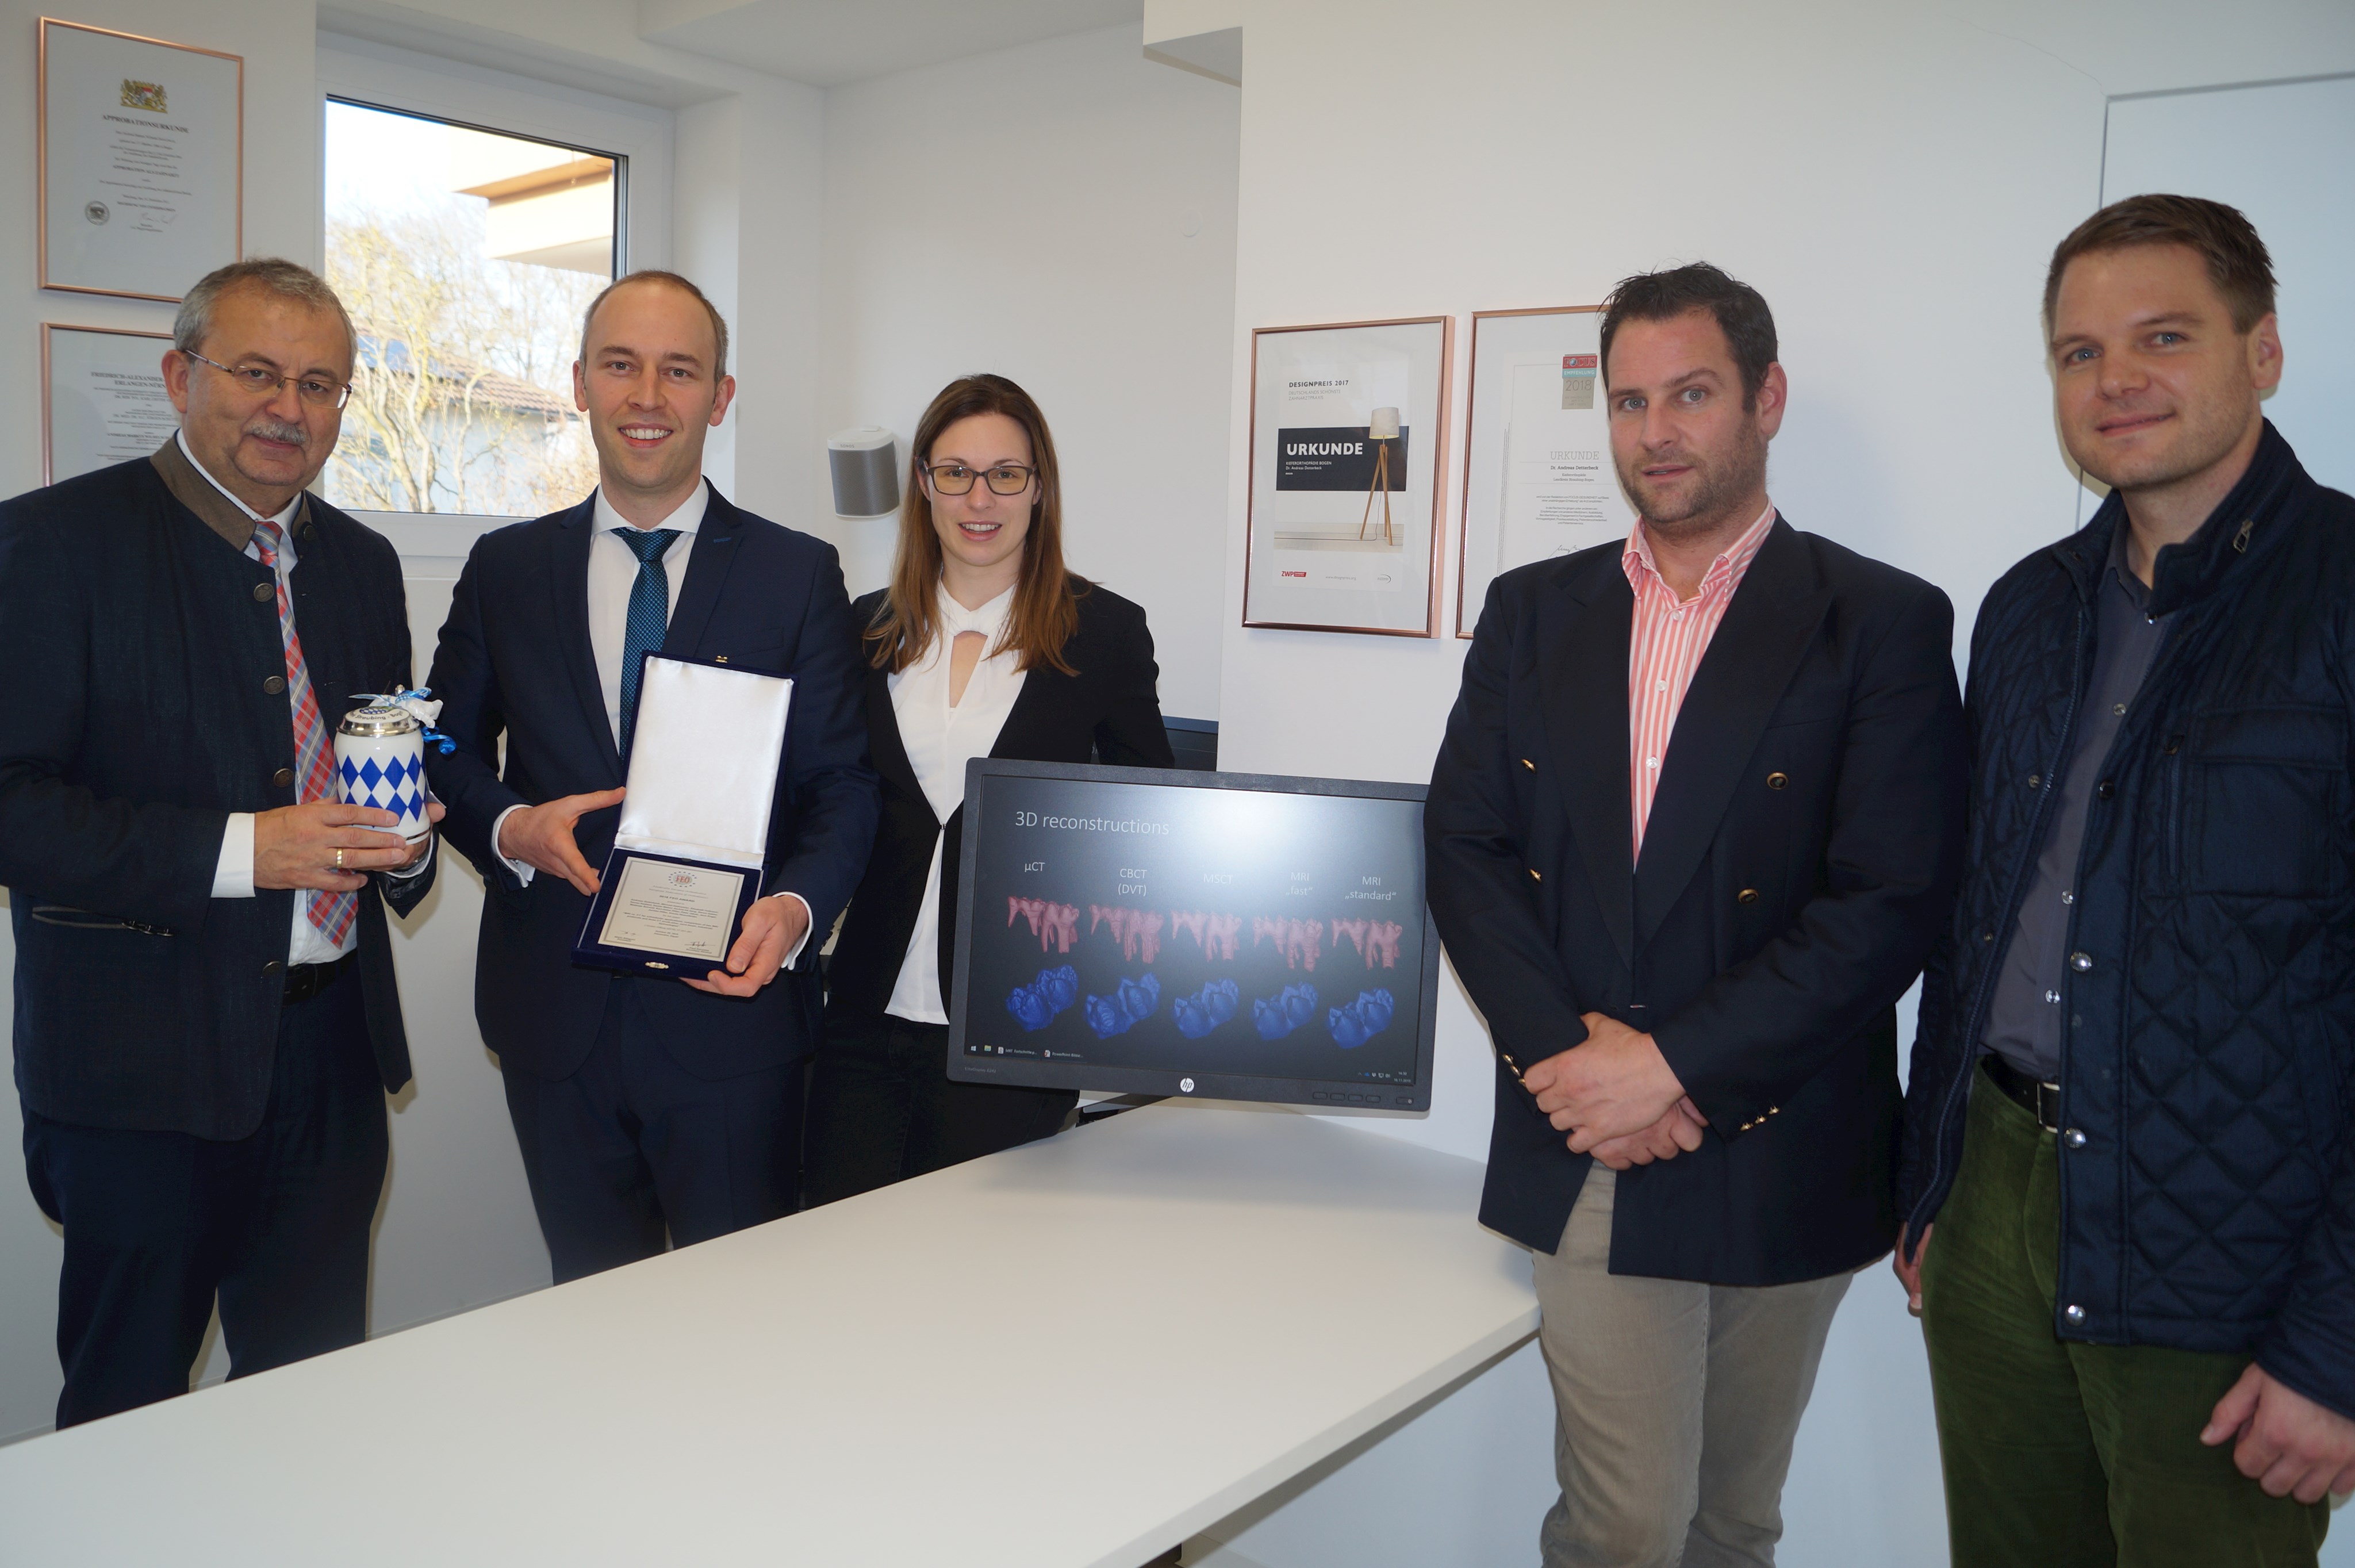 Internationale Auszeichnung für Kieferorthopäden aus dem Landkreis Straubing-Bogen